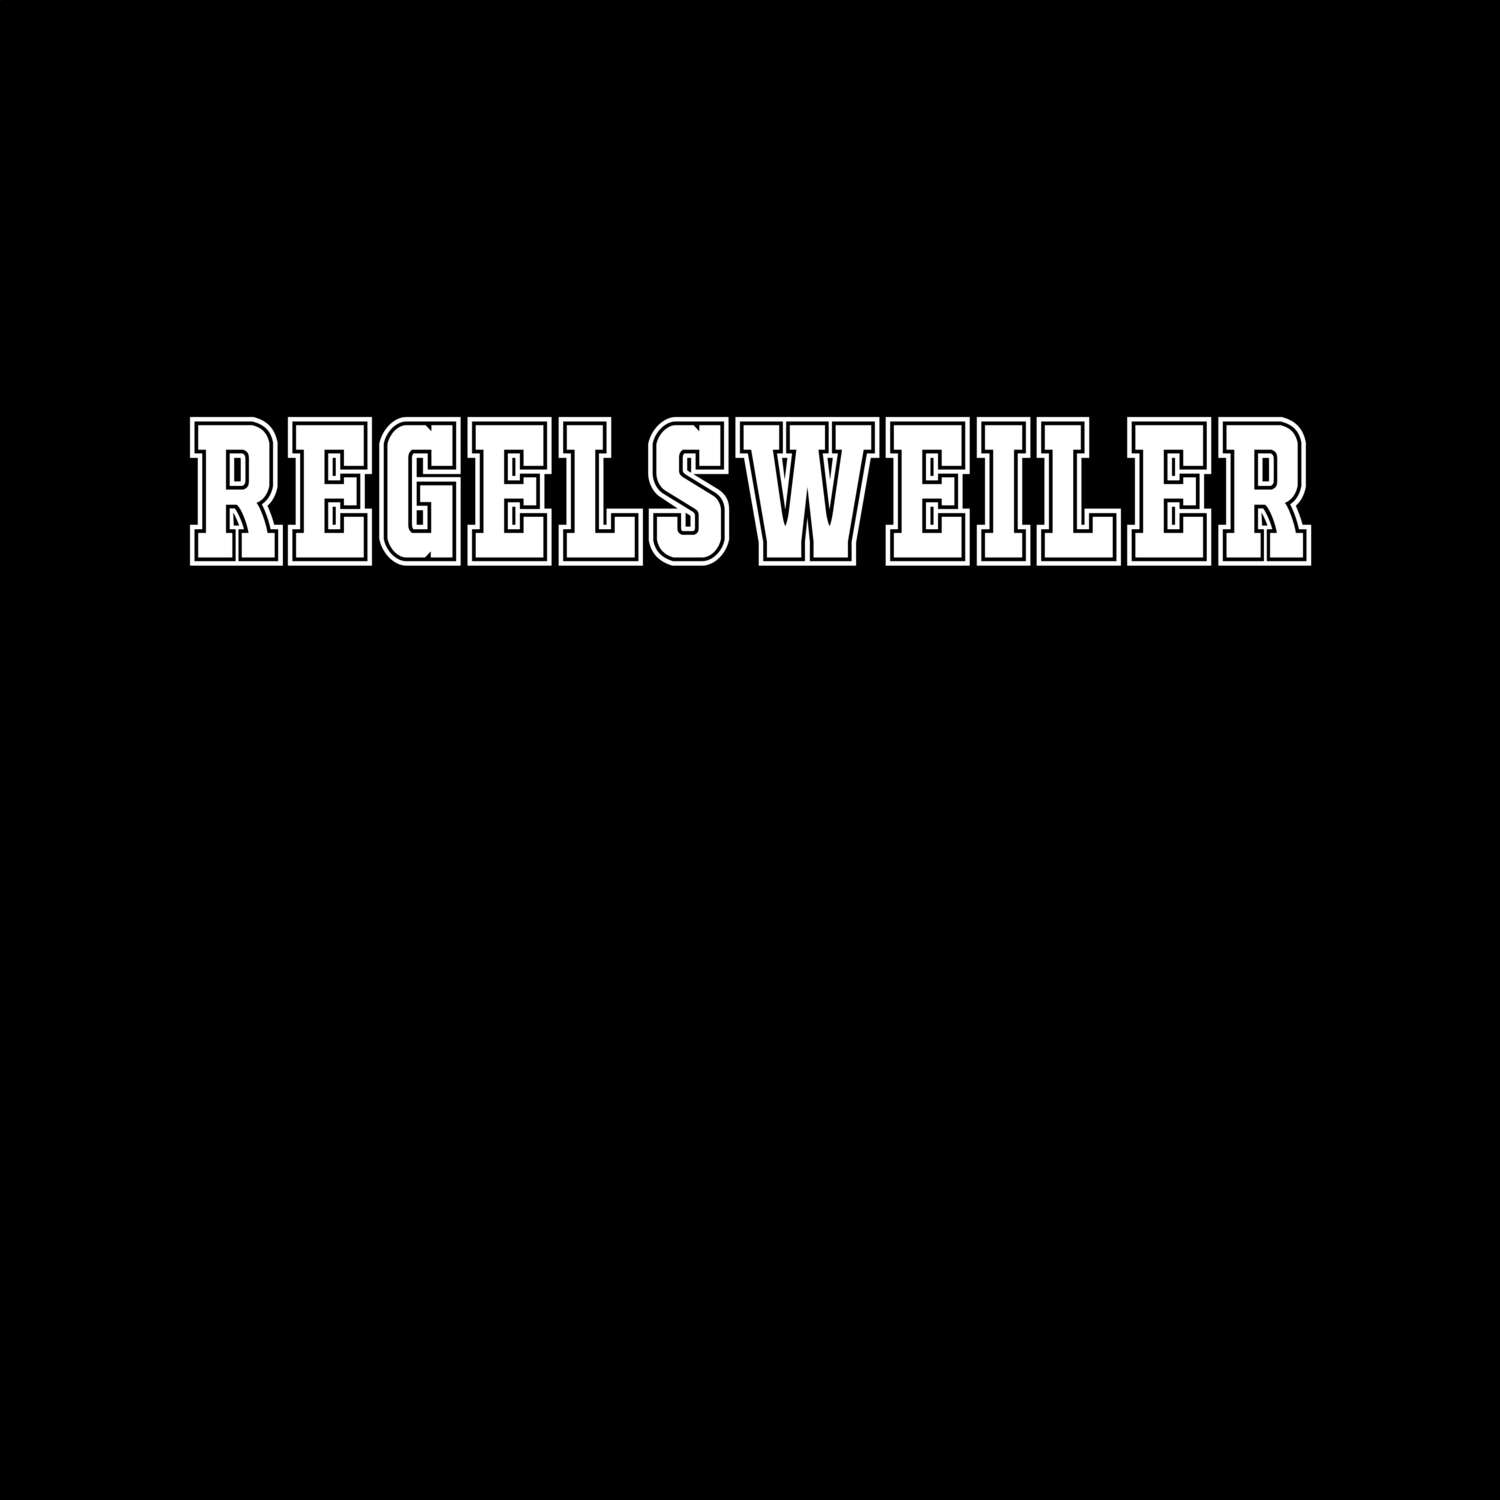 Regelsweiler T-Shirt »Classic«